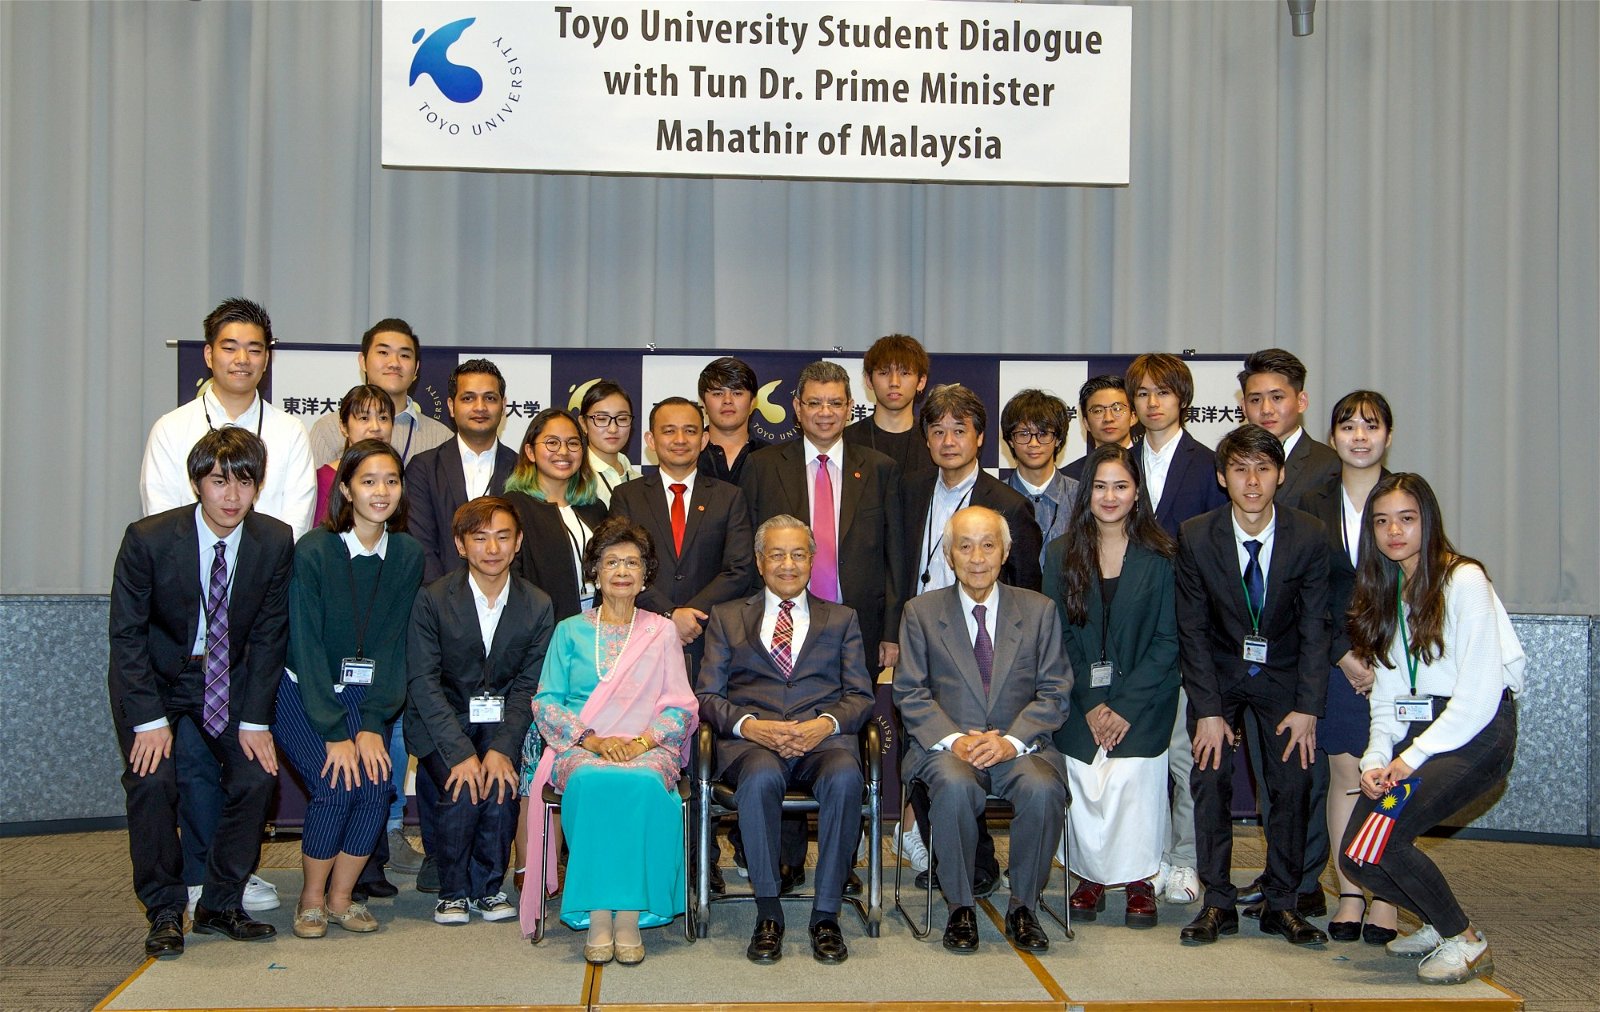 马哈迪（前排中）周三与东京大学学生交流后，与学生合照。